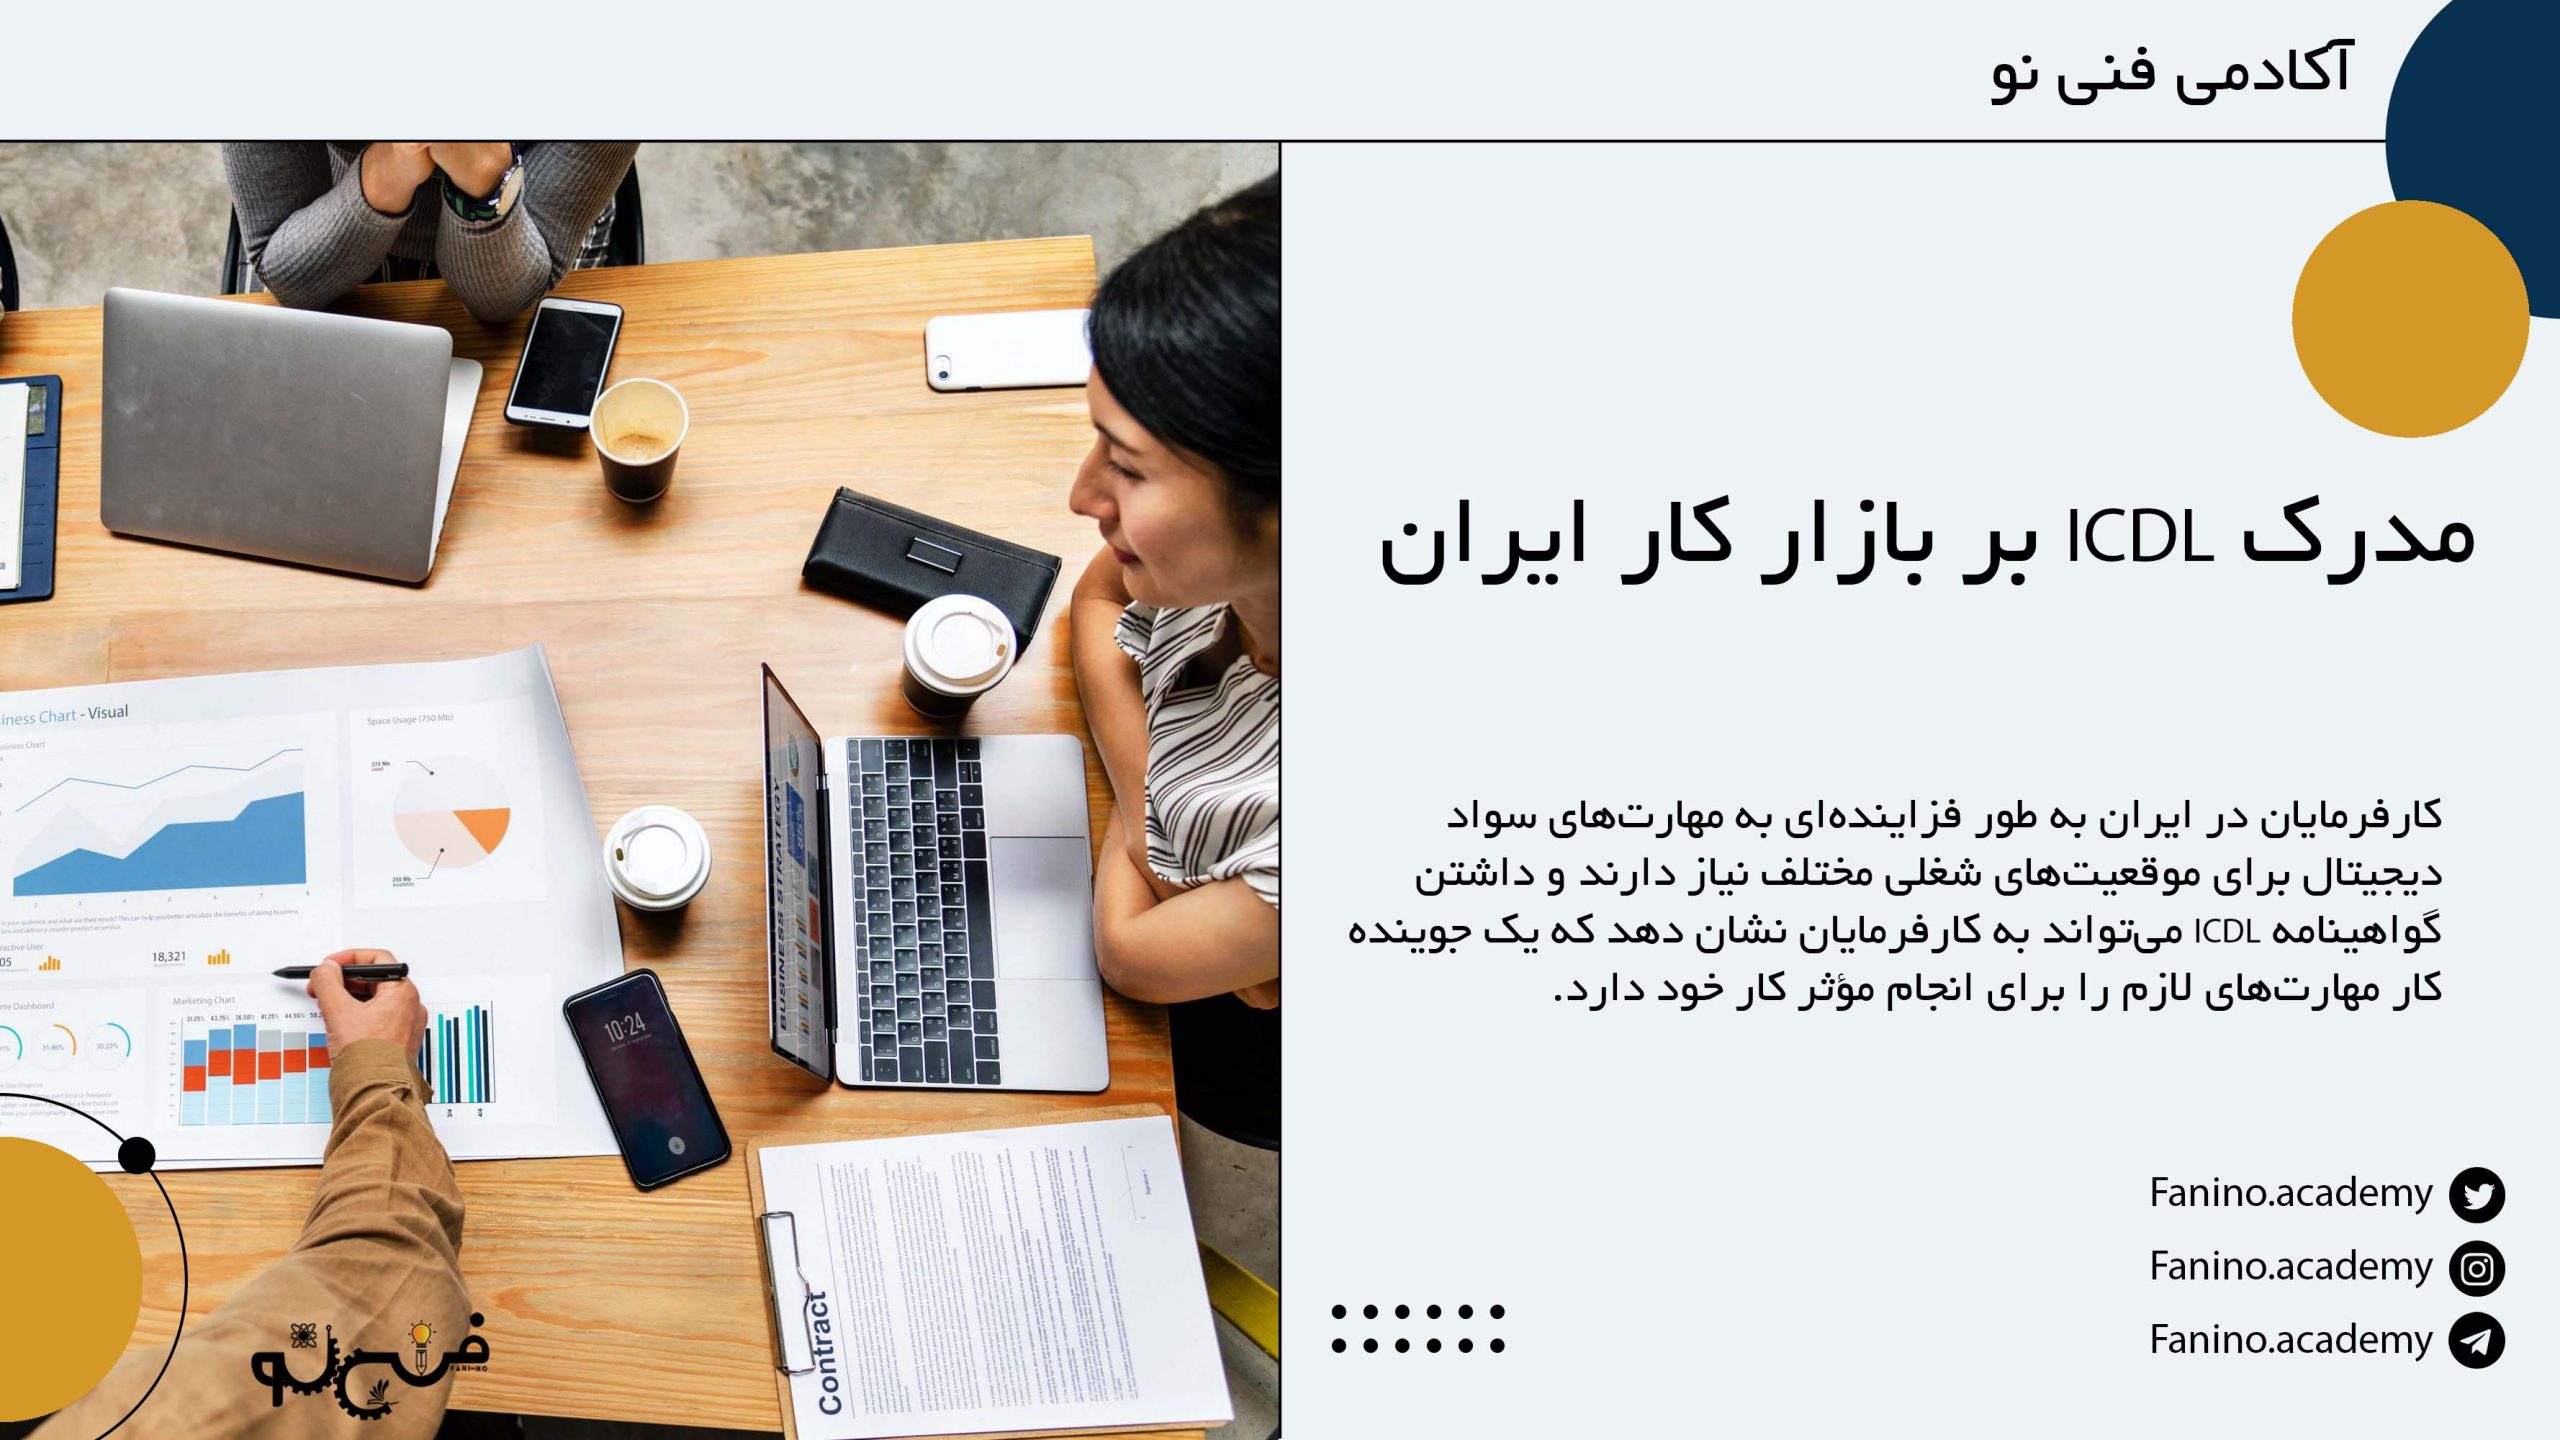 تاثیر مدرک ICDL بر بازار کار ایران